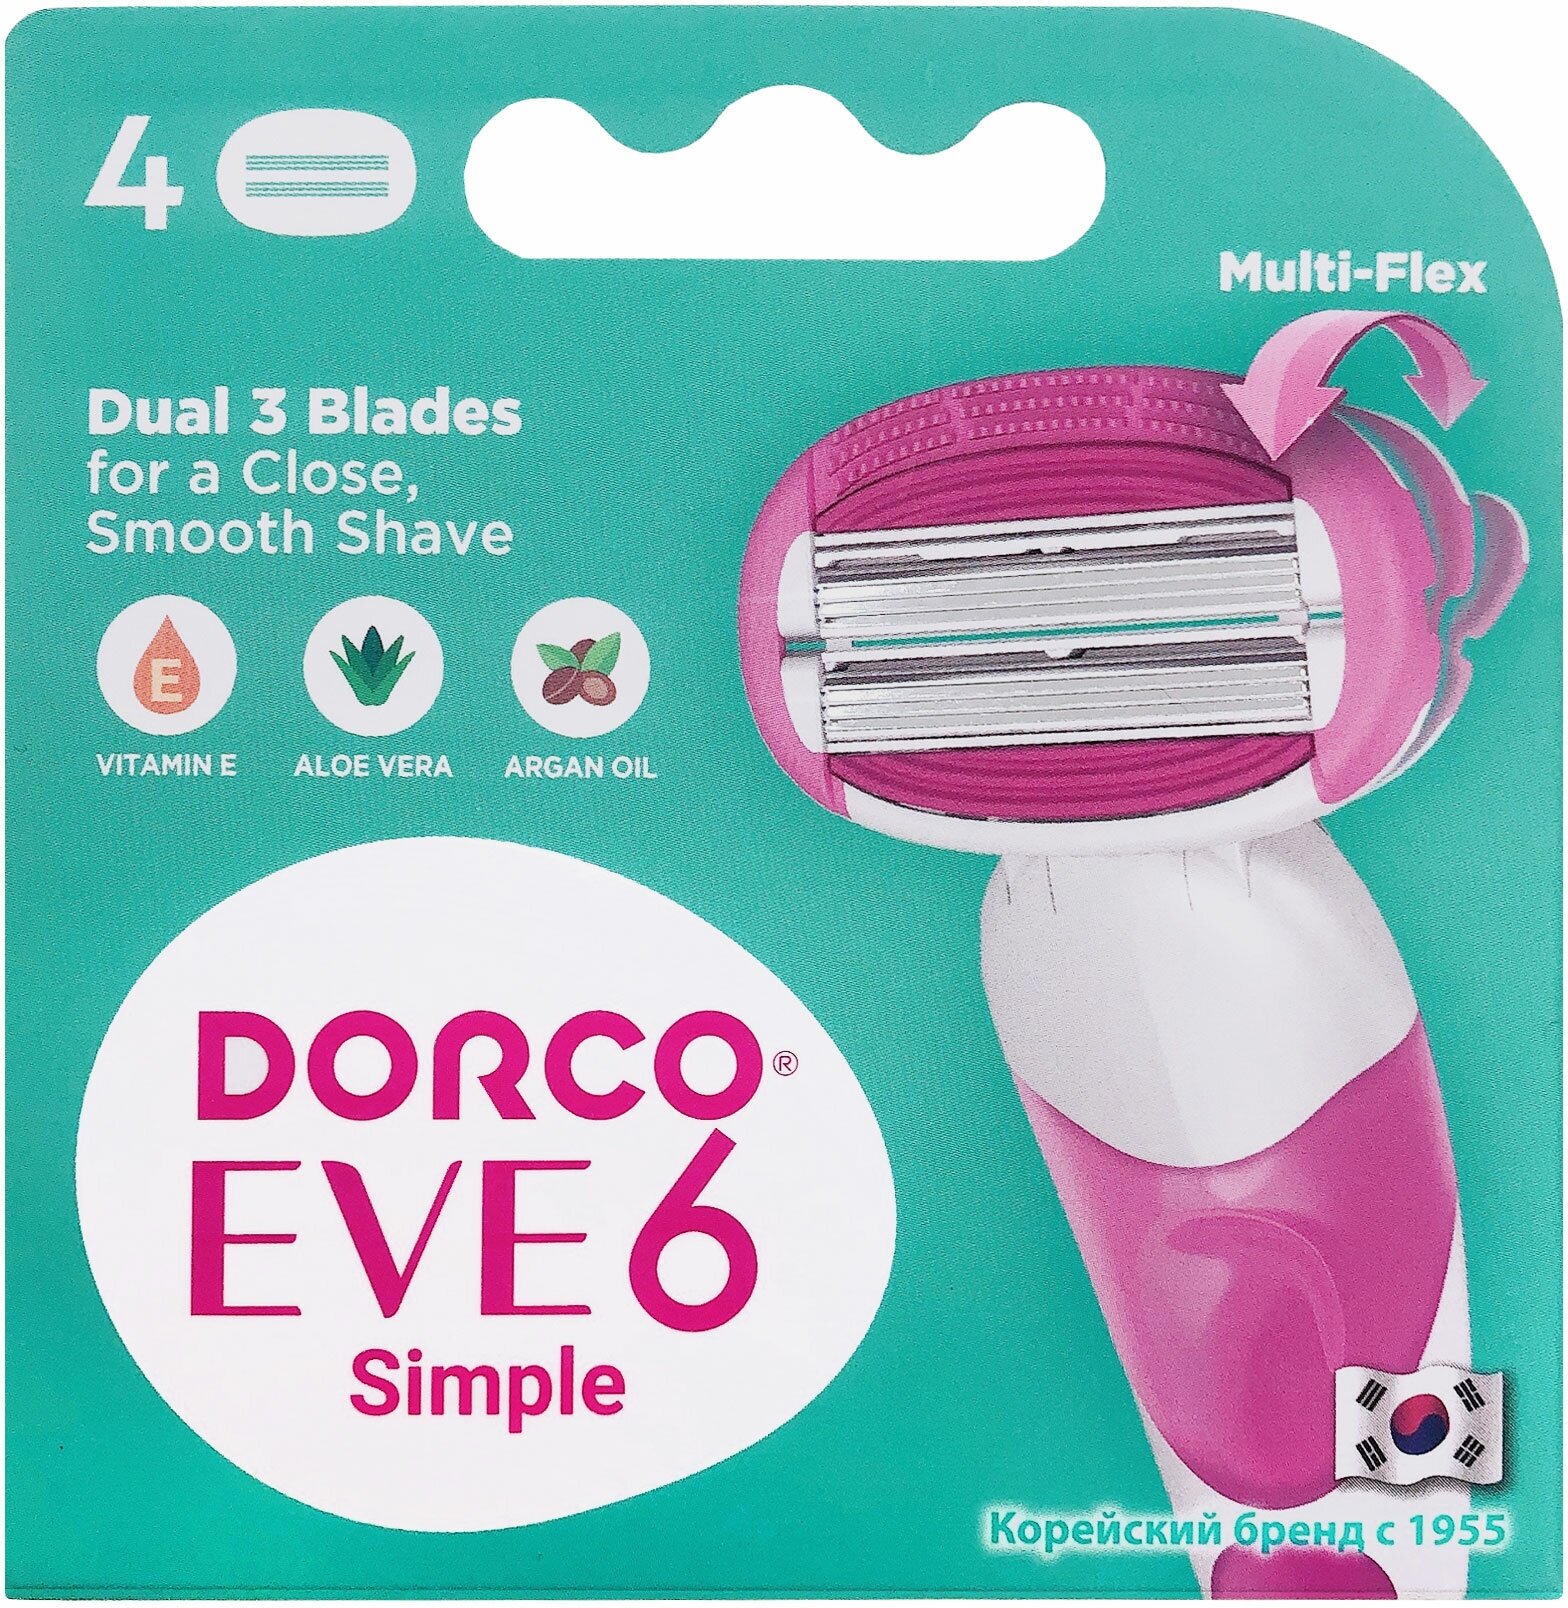 Сменные кассеты Dorco Eve 6 для бритья станка женские